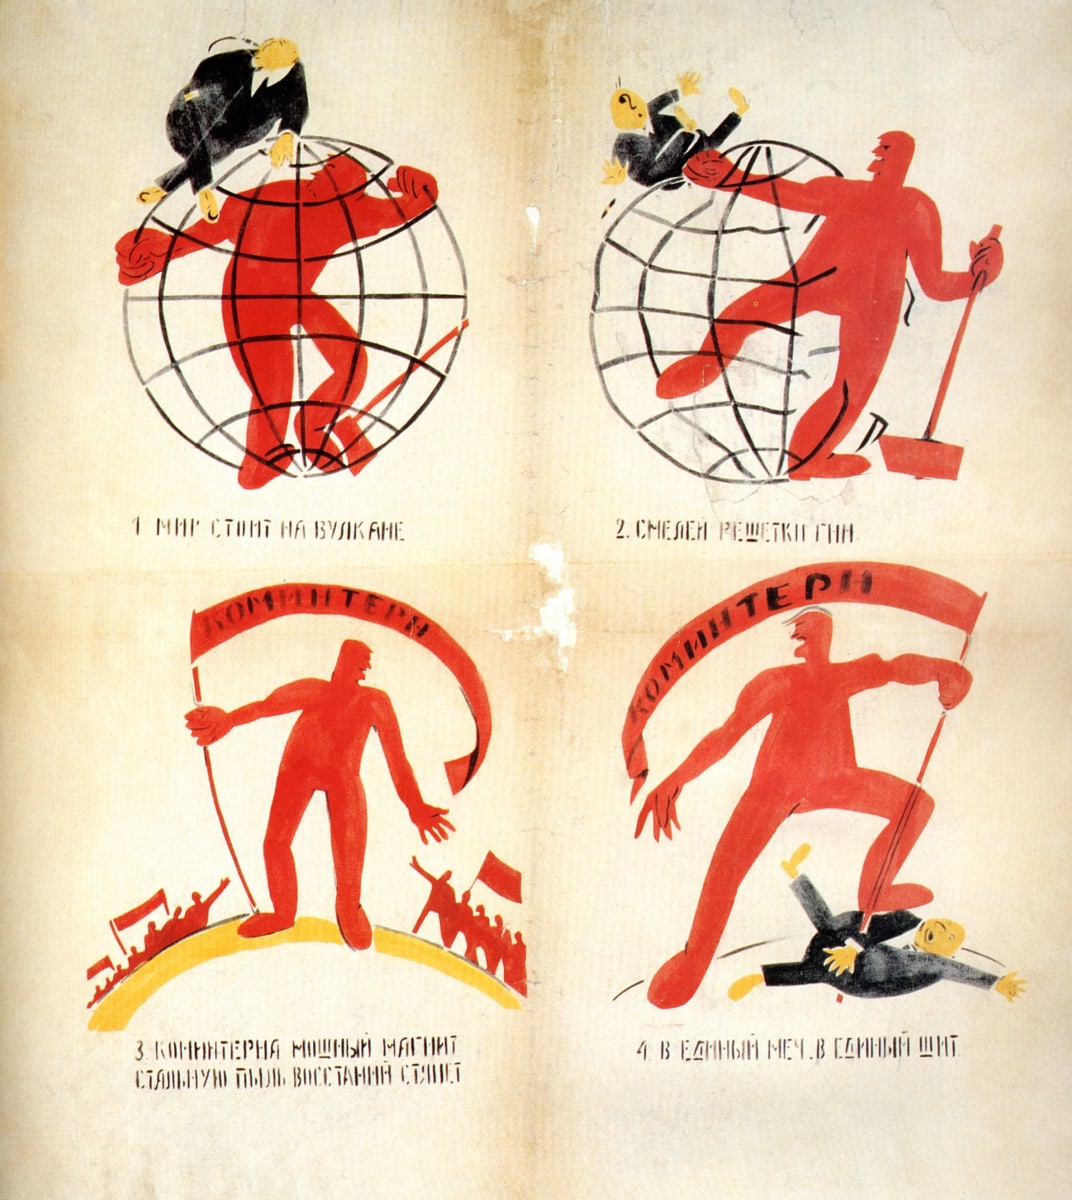 Плакат из серии “Окна сатиры РОСТА” 1919-1921 гг.   